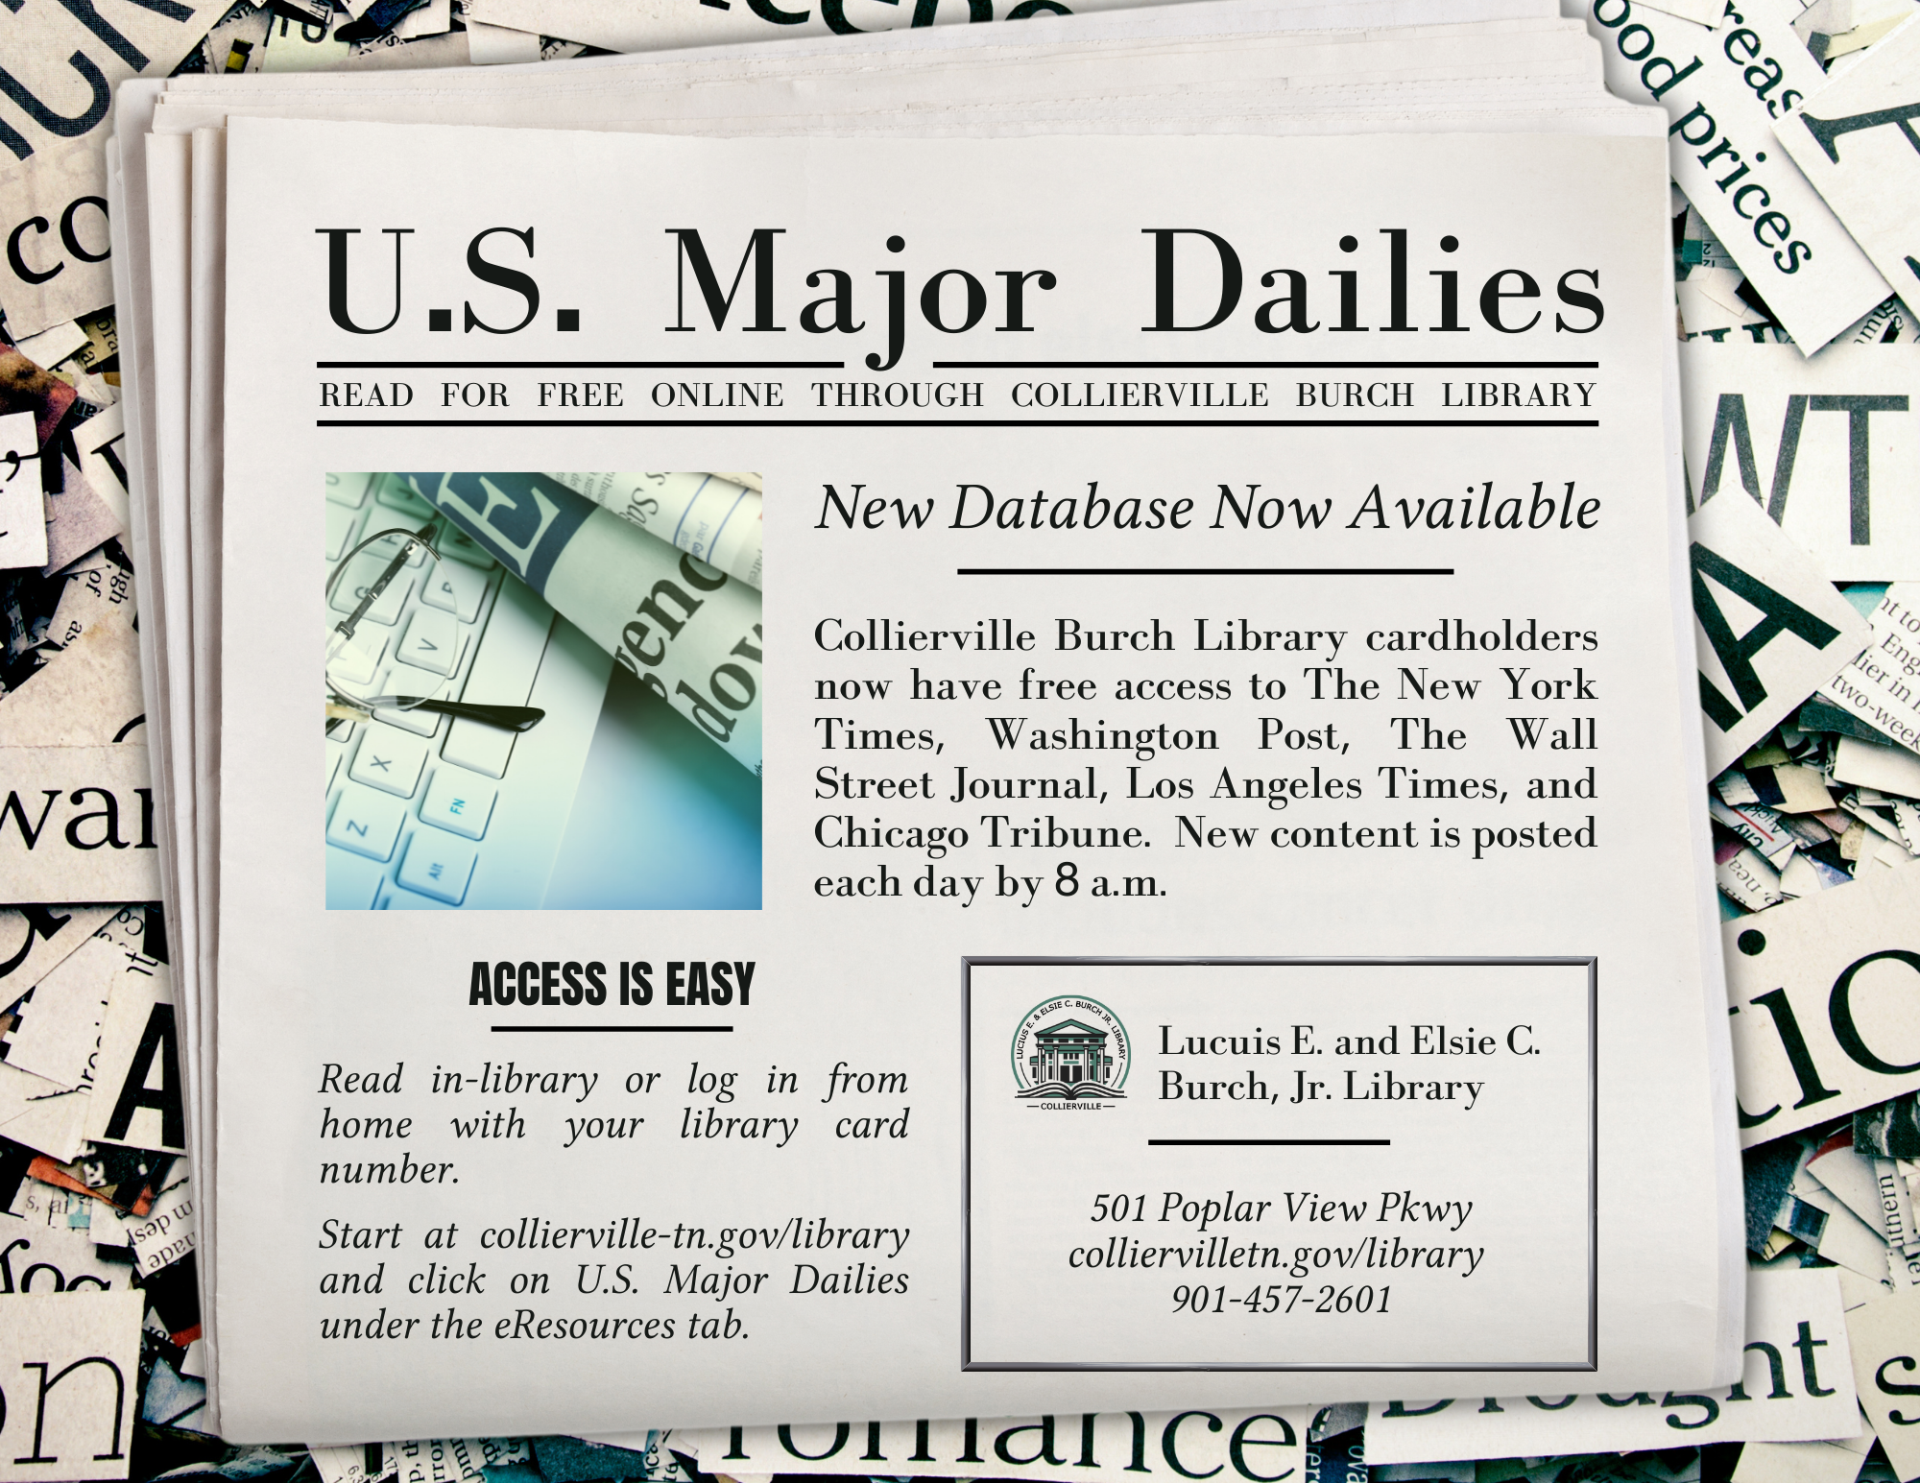 U.S. Major Dailies Flyer